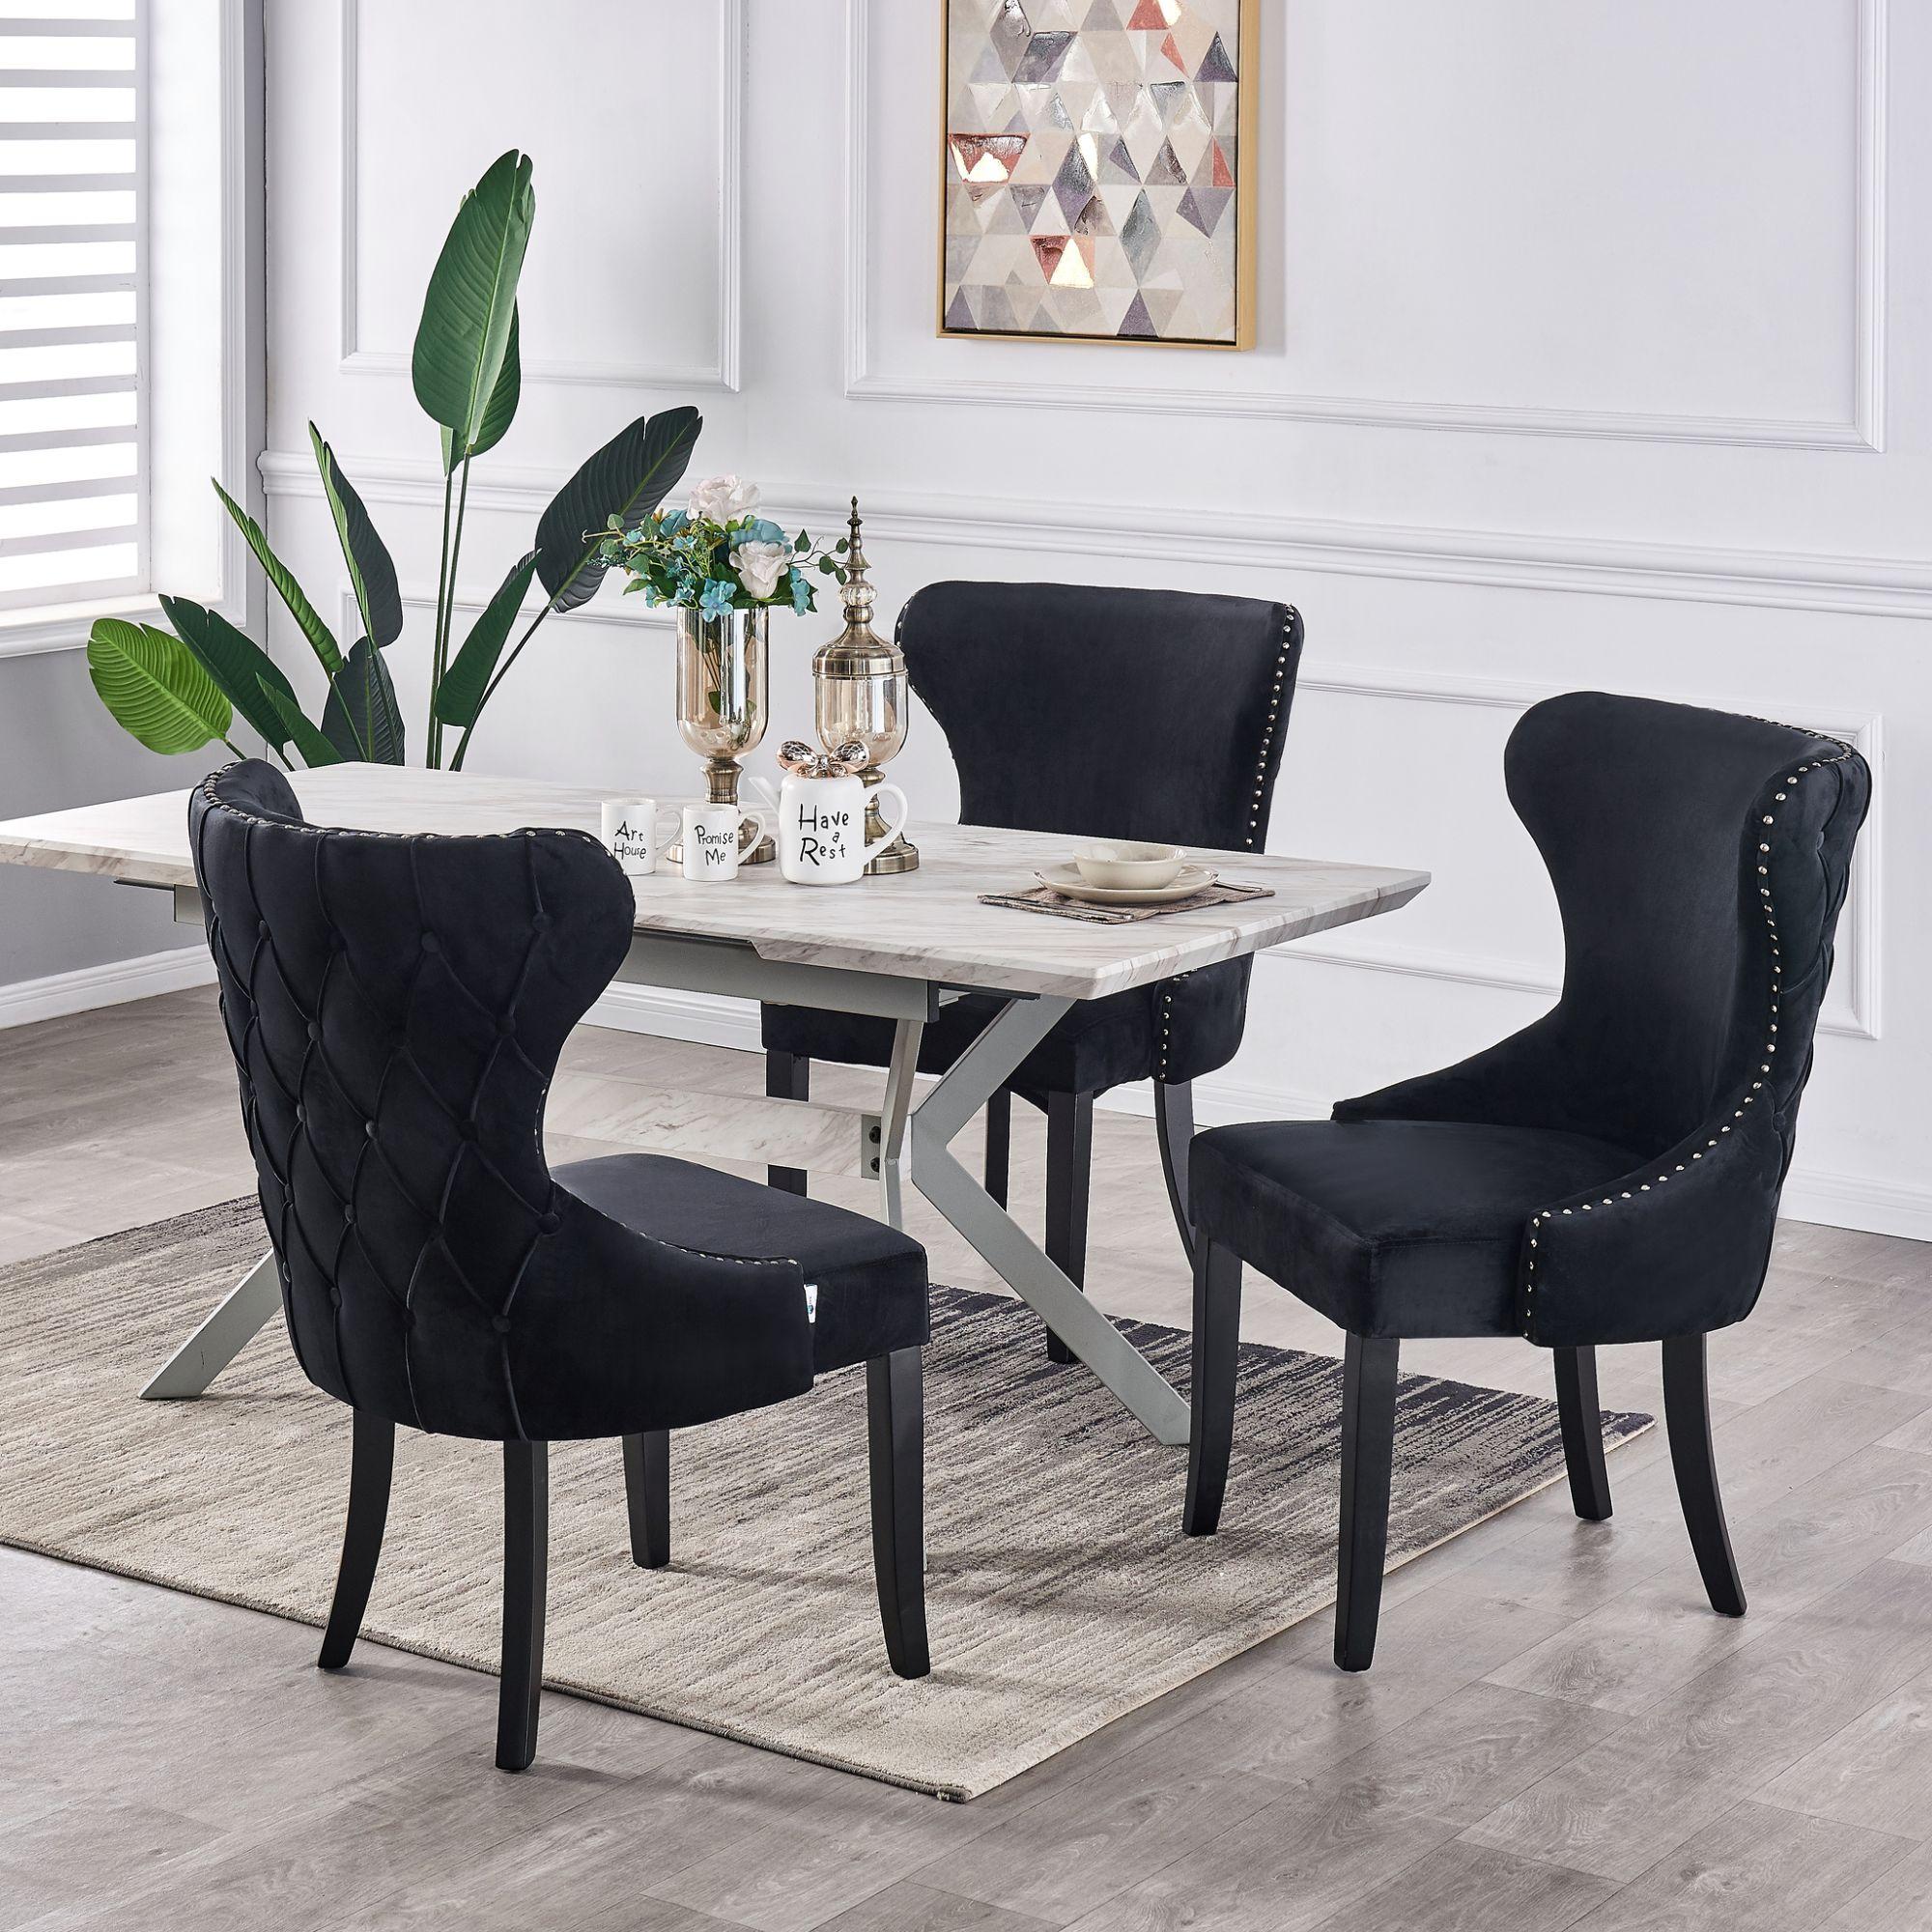 Eva - ensemble table à manger extensible 4 à 6 personnes décor marbre gris  & noir + 4 chaises en velours grises - style moderne LIFE INTERIORS